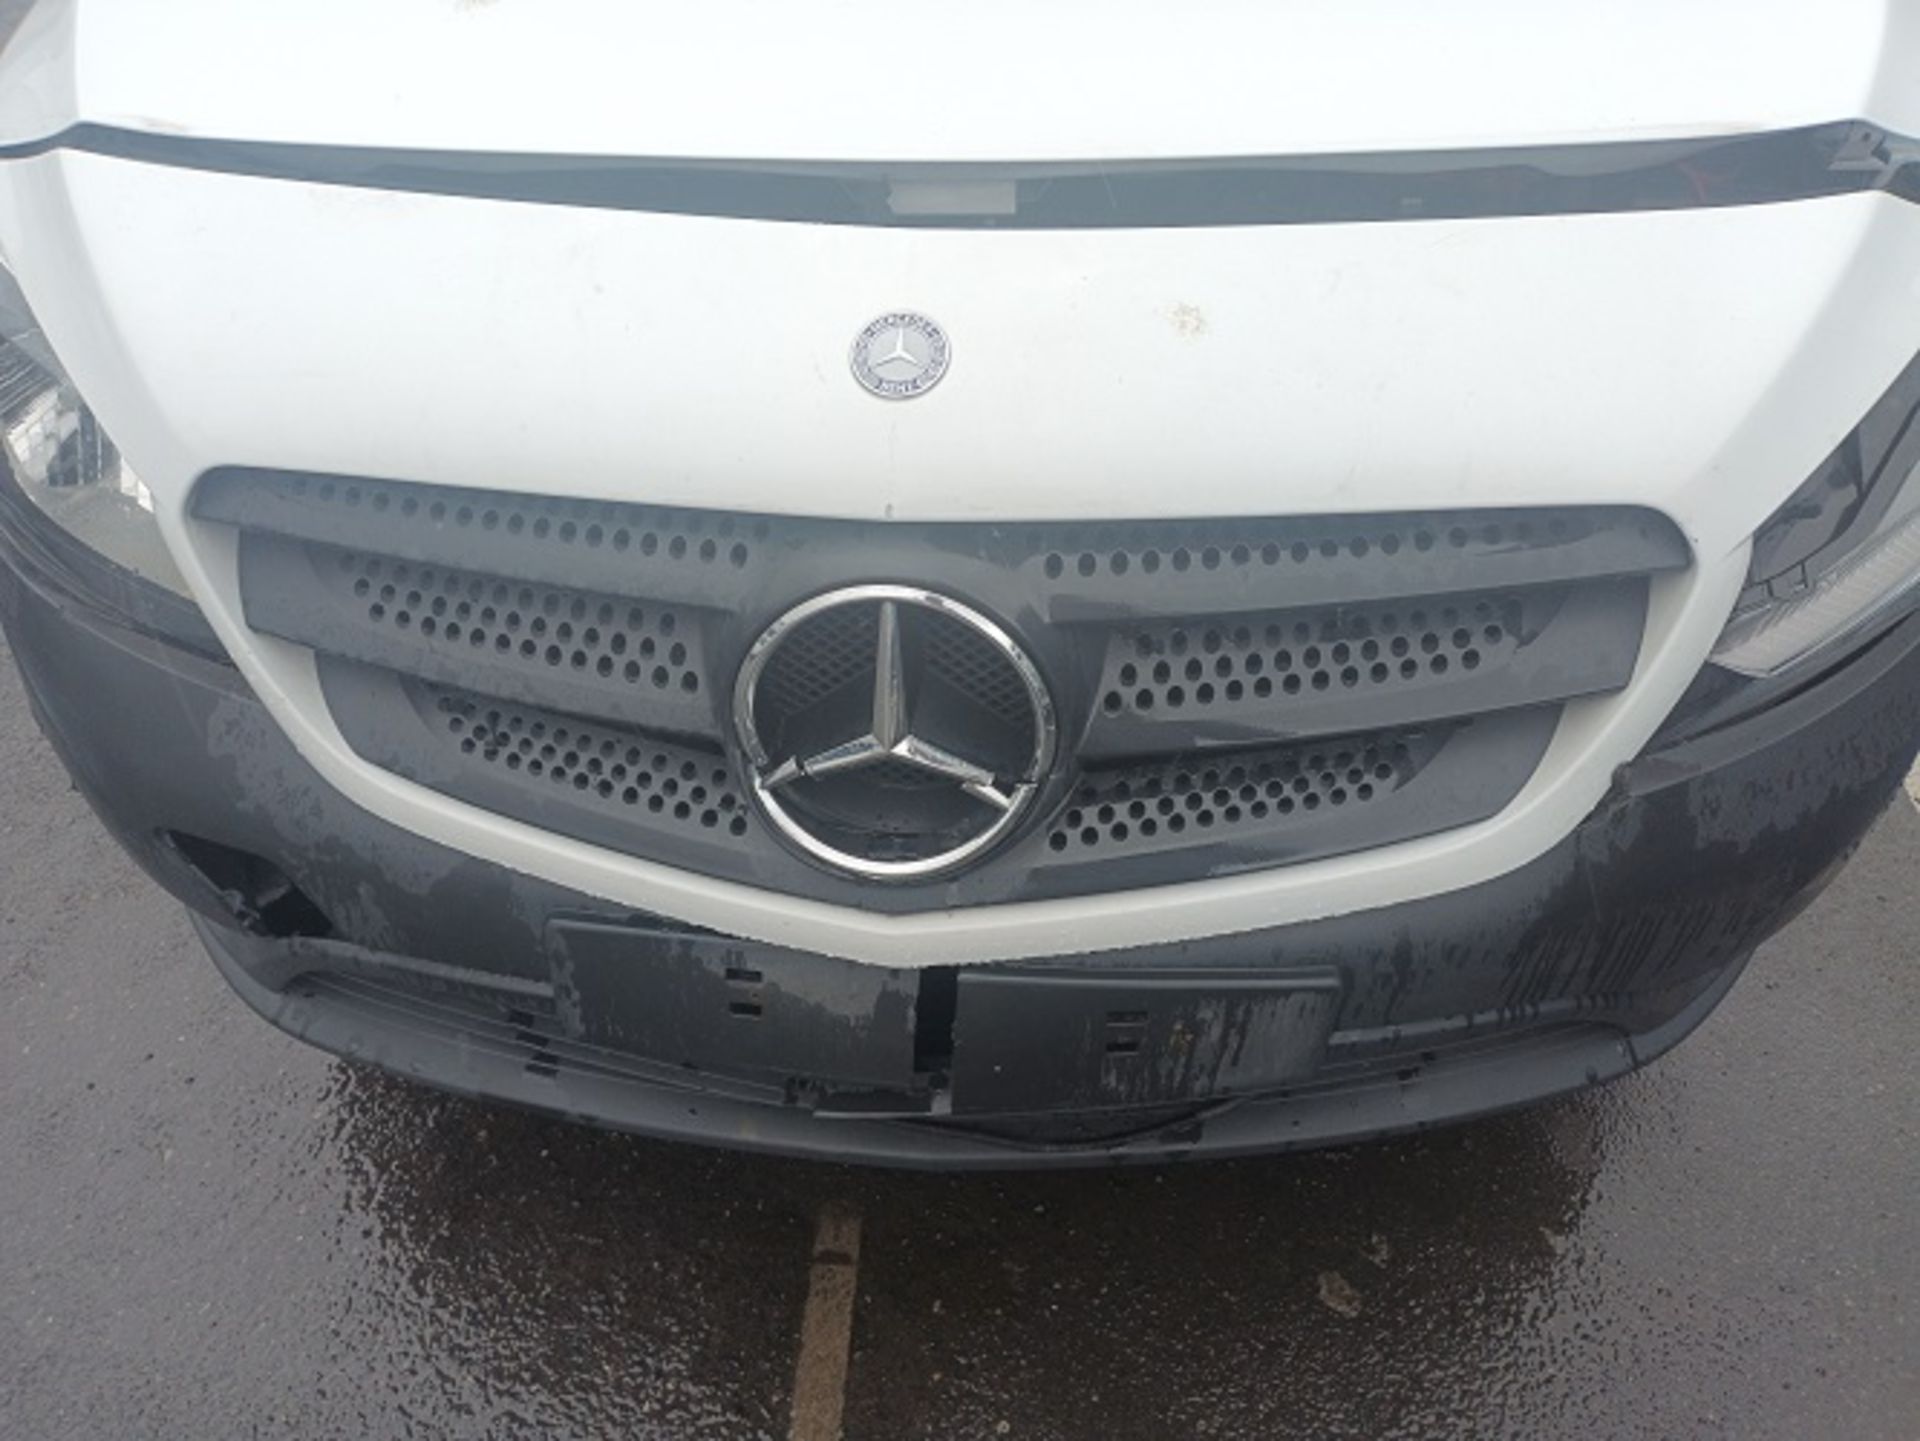 Mercedes Citan panel van, registration number BF68 EFJ with 150,055 miles (front end damage) - Image 3 of 4